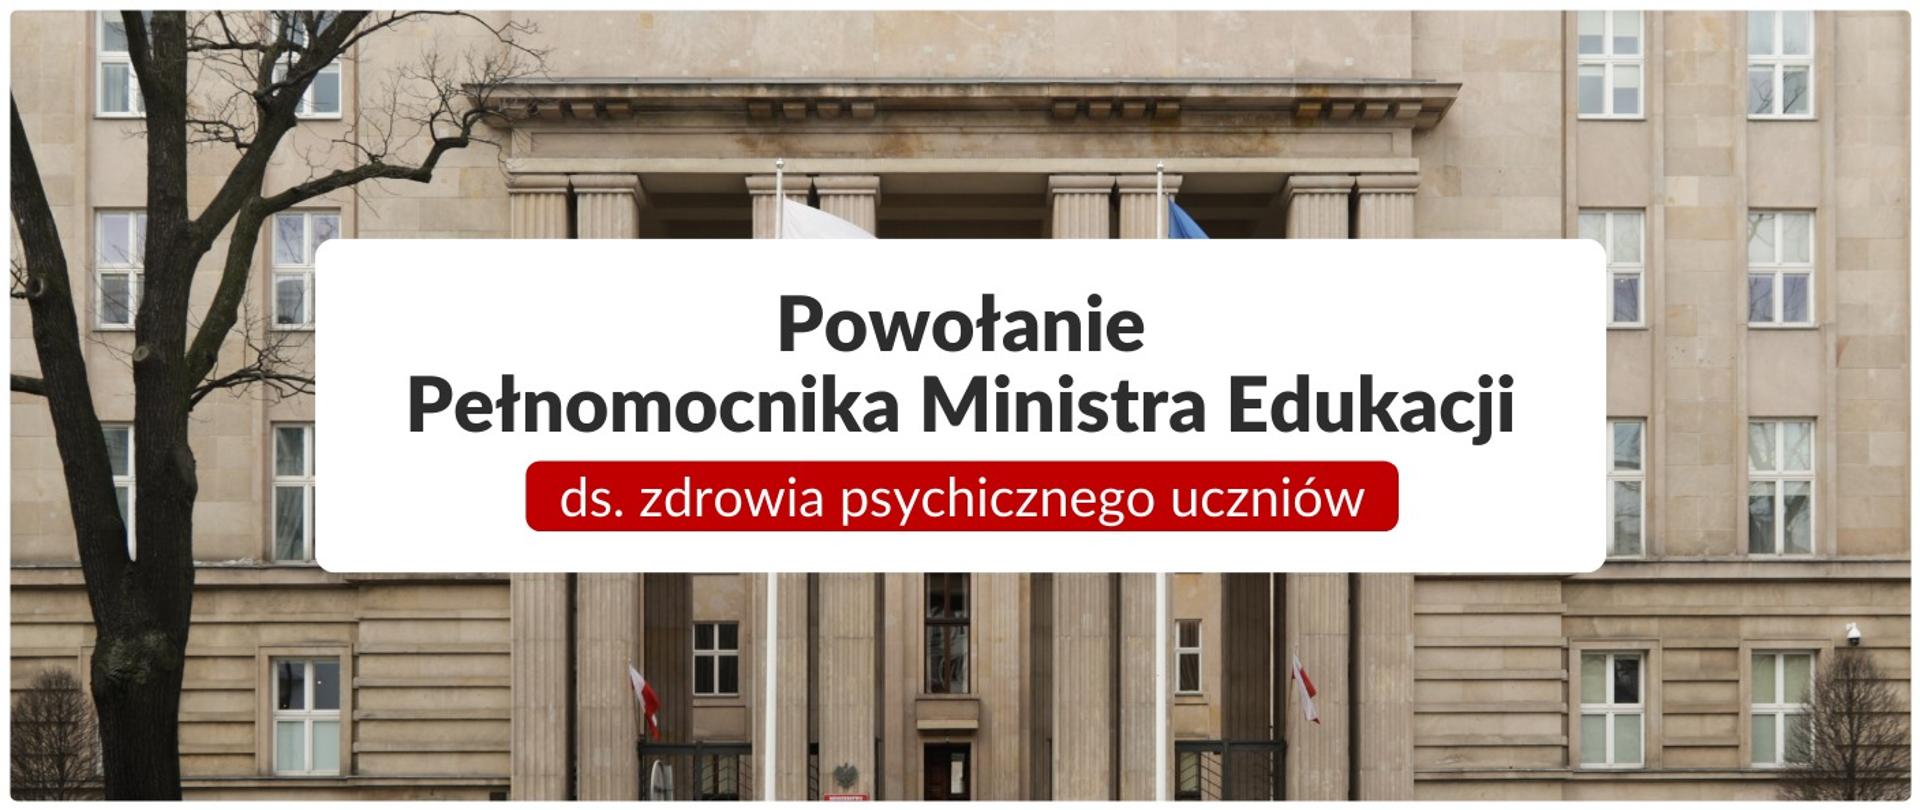 Na tle zdjęcia budynku Ministerstwa Edukacji Narodowej na biały tle napis: Powołanie Pełnomocnika Ministra Edukacji ds. zdrowia psychicznego uczniów